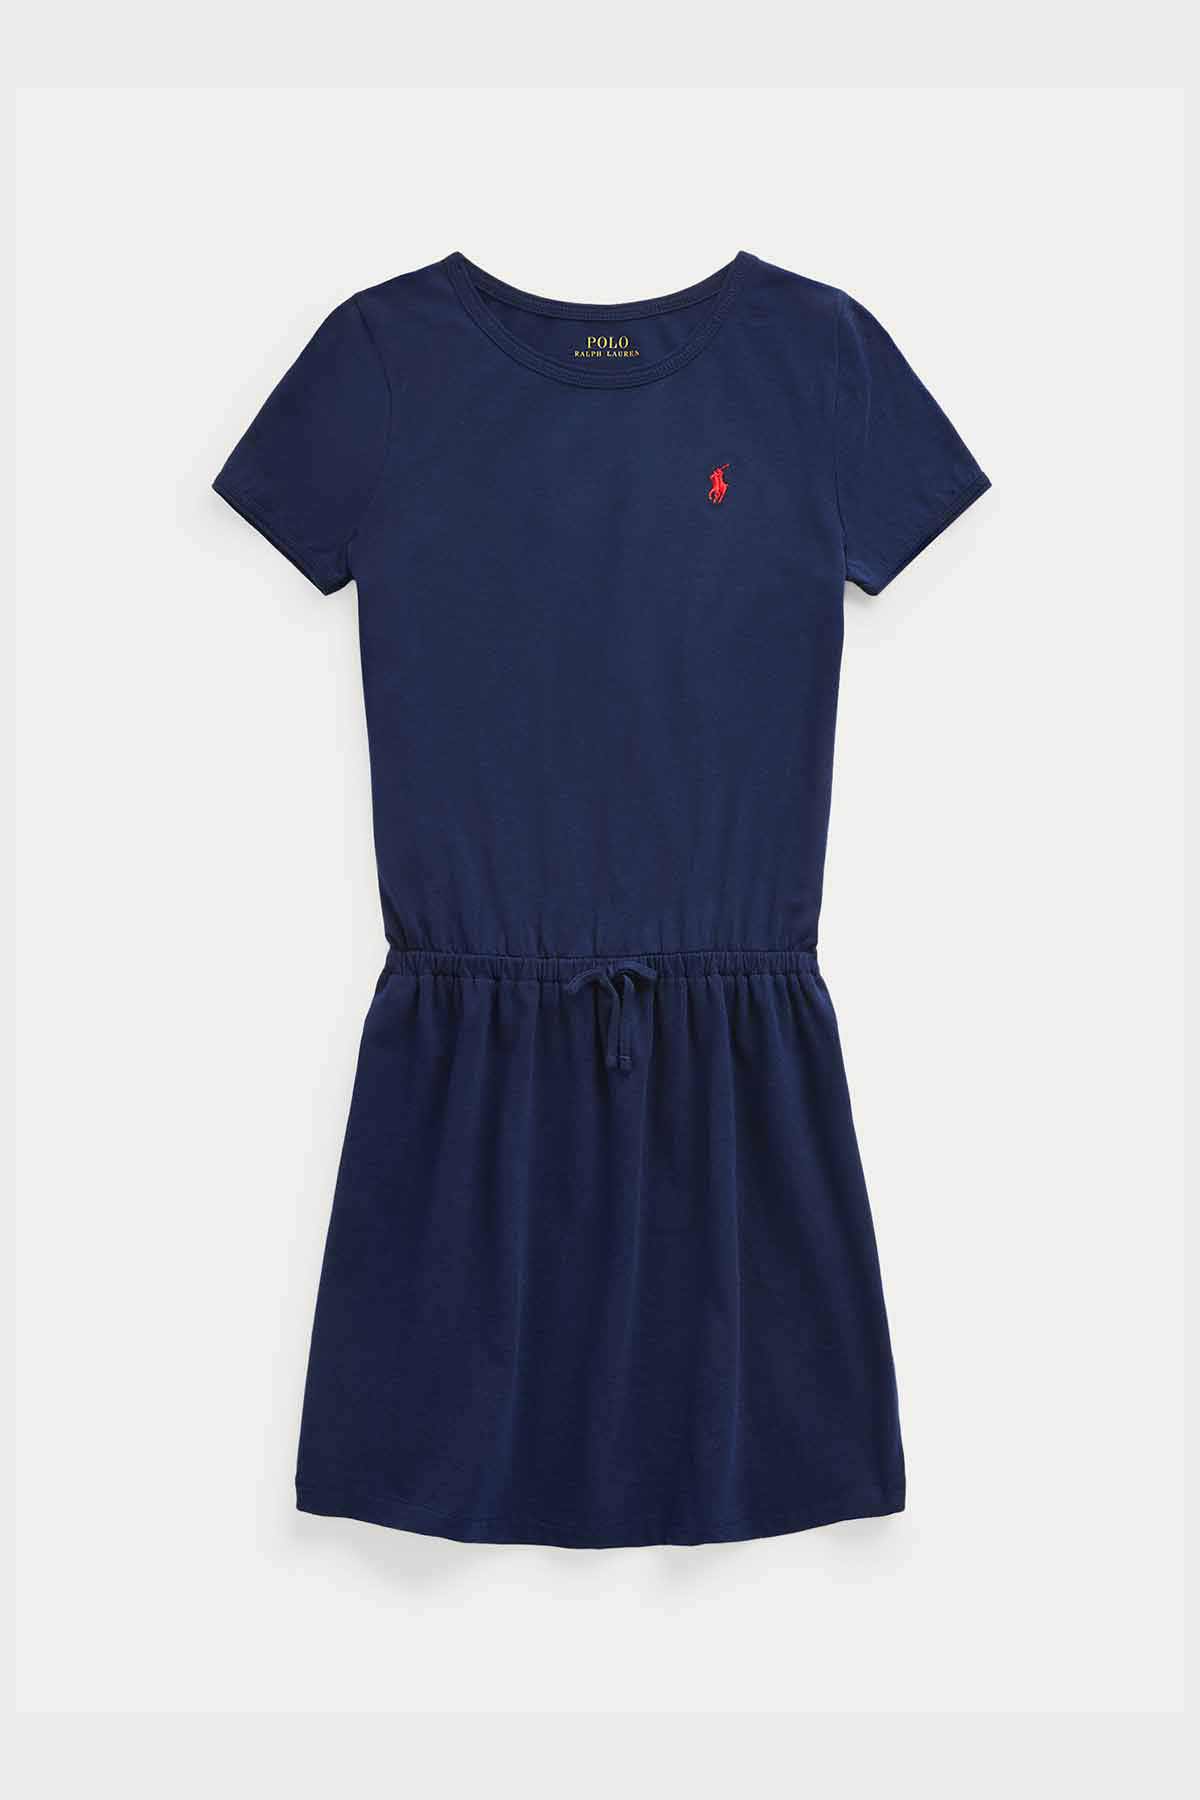 Polo Ralph Lauren 5-6.5 Yaş Kız Çocuk Belden Büzgülü Elbise-Libas Trendy Fashion Store